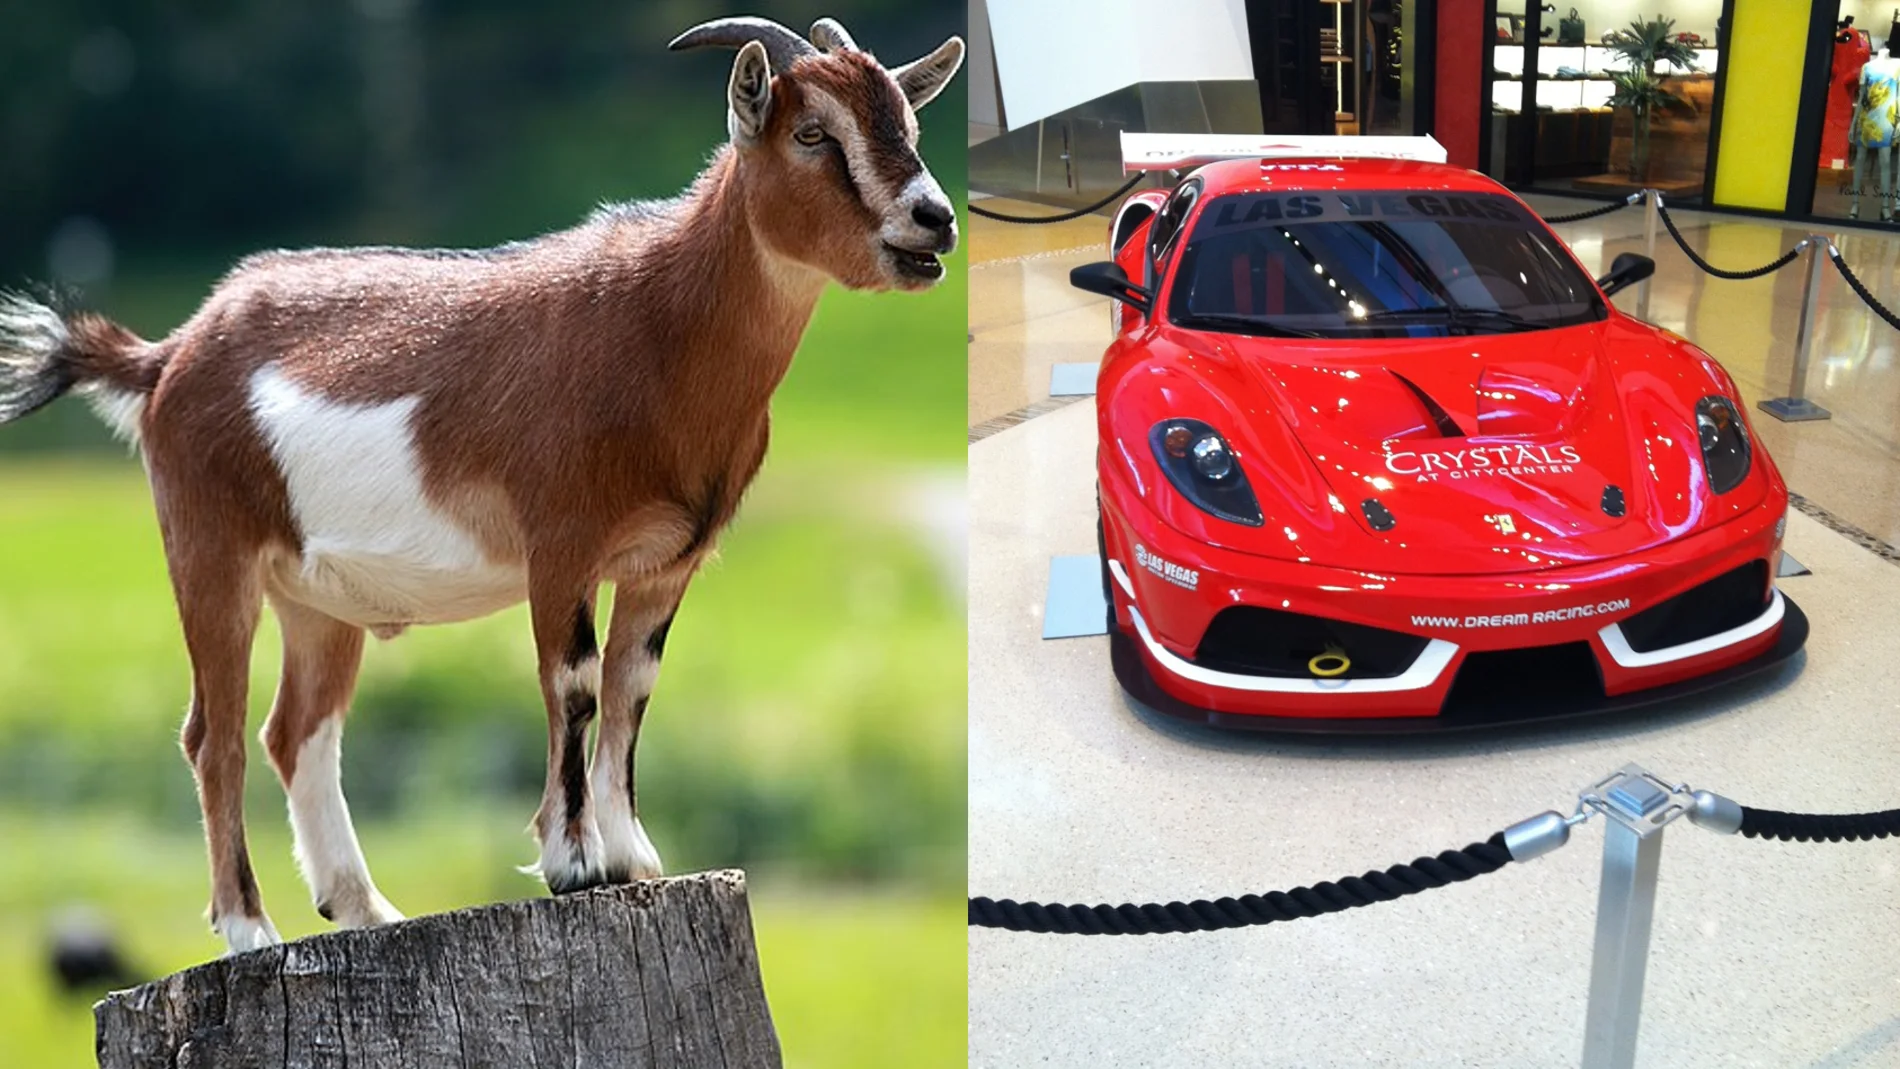 ¿Qué prefieres ganar, una cabra o un coche?